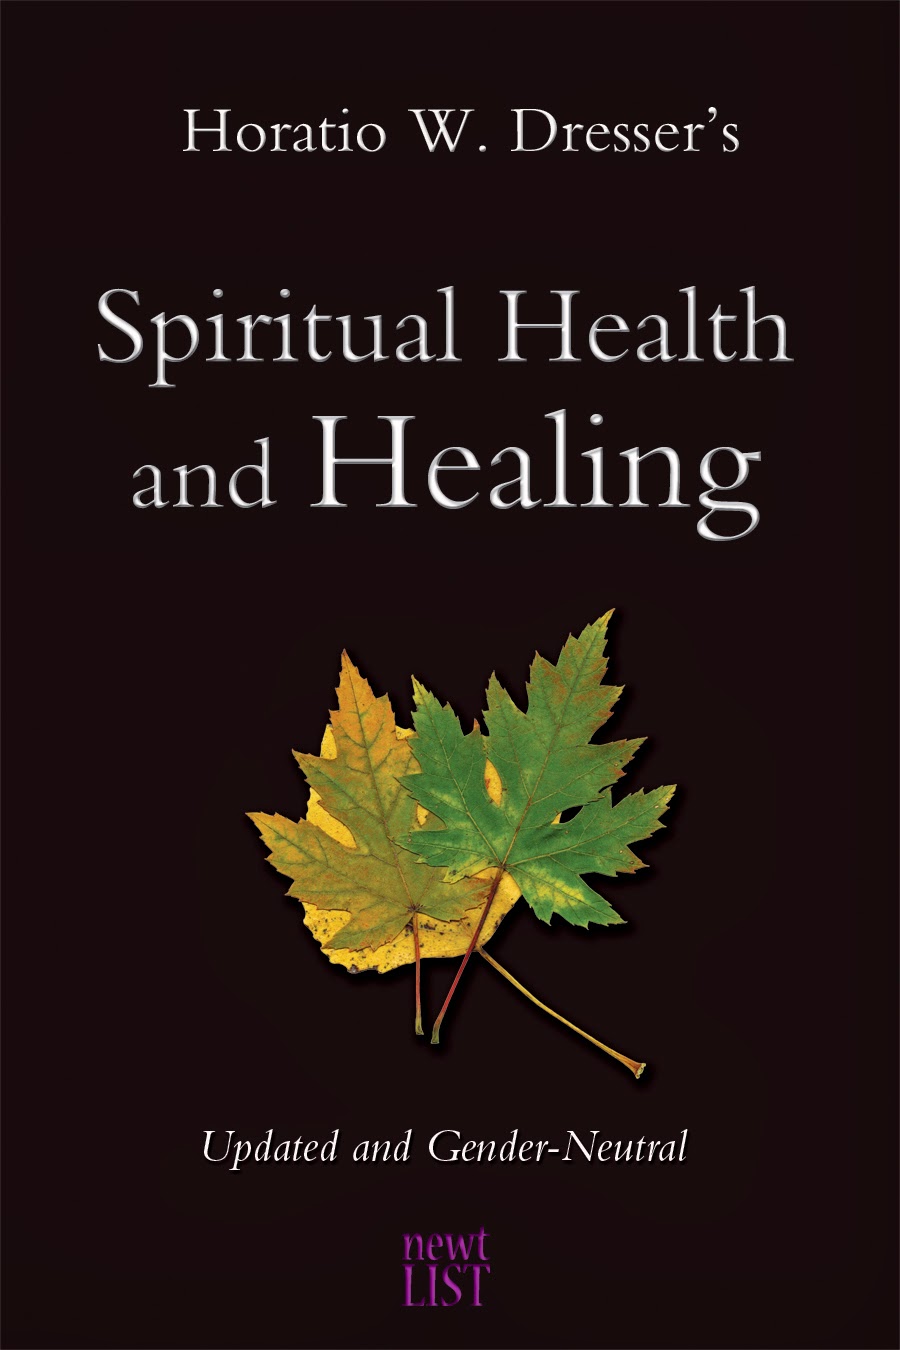  Spiritual Health and Healing